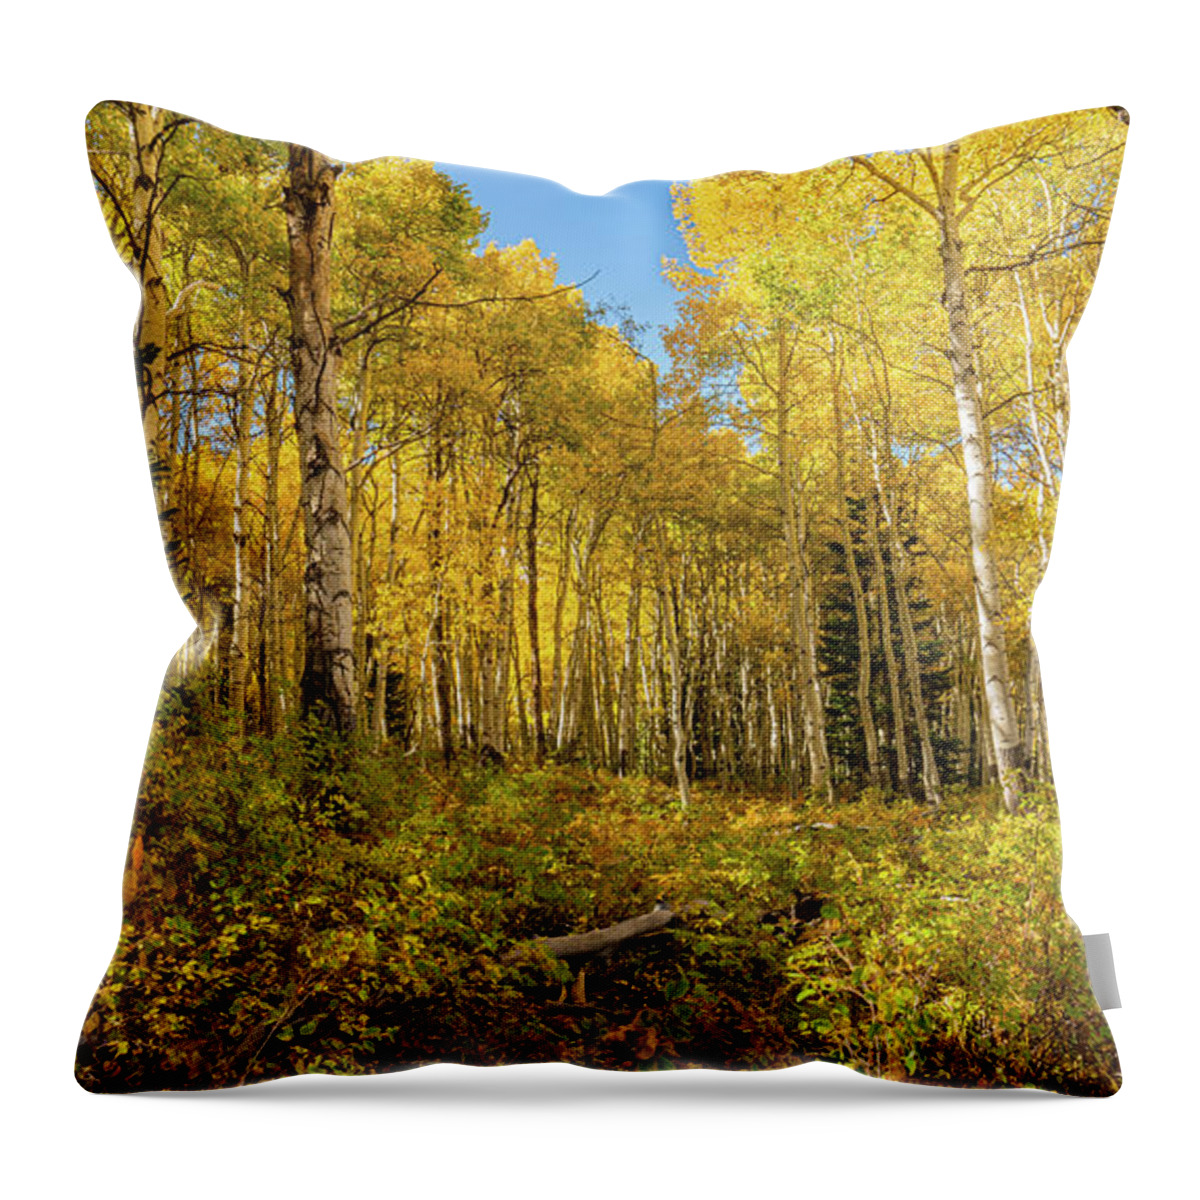 Aspens Throw Pillow featuring the photograph Autumn Golden Aspen Splendor by Ron Long Ltd Photography